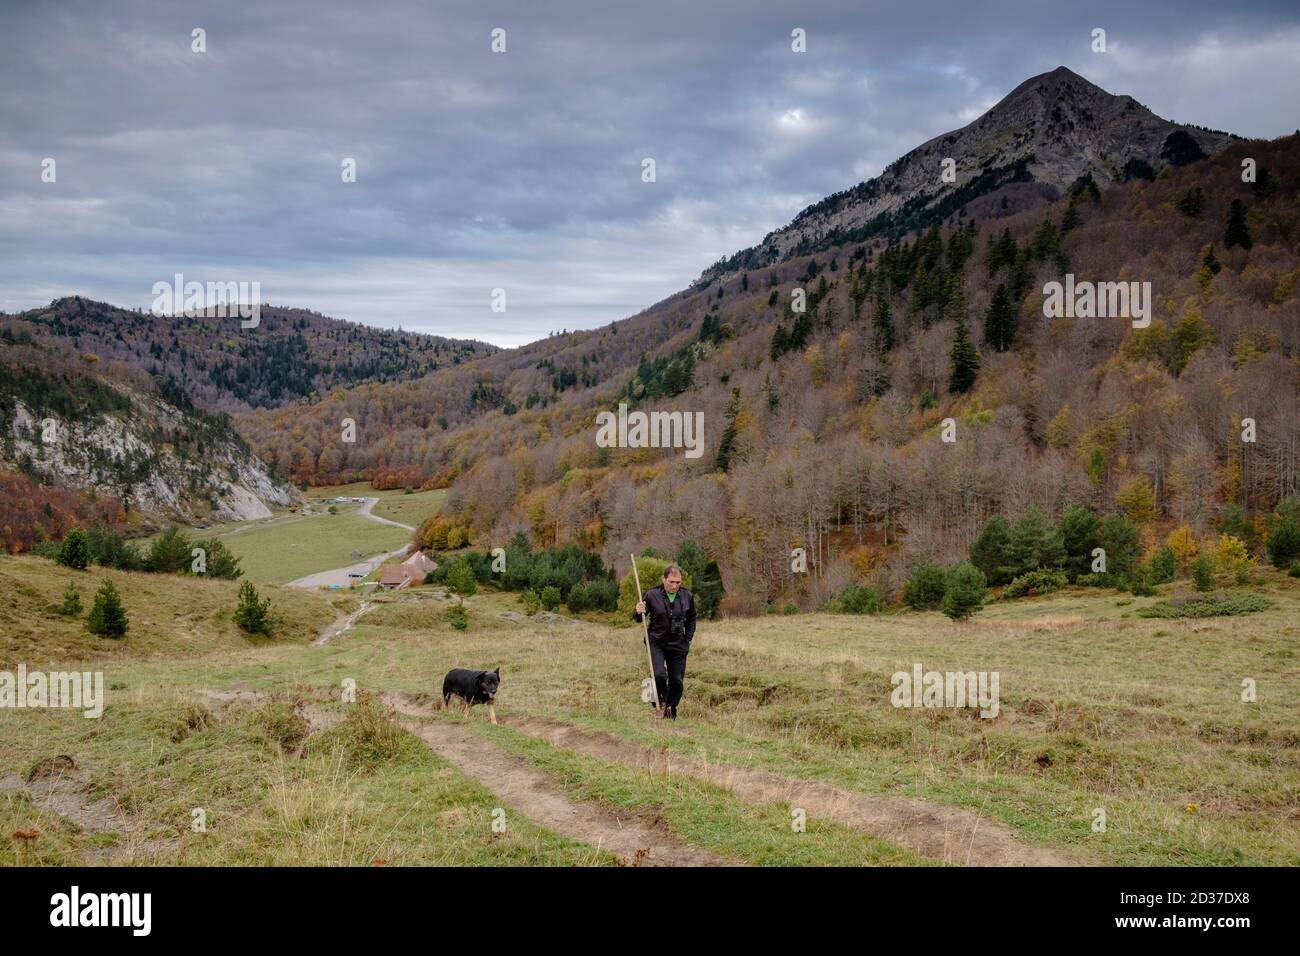 pastor en la loma del Sobrante, refugio de Linza, Parque natural de los Valles Occidentales, Huesca, cordillera de los pirineos, Spain, Europe Stock Photo